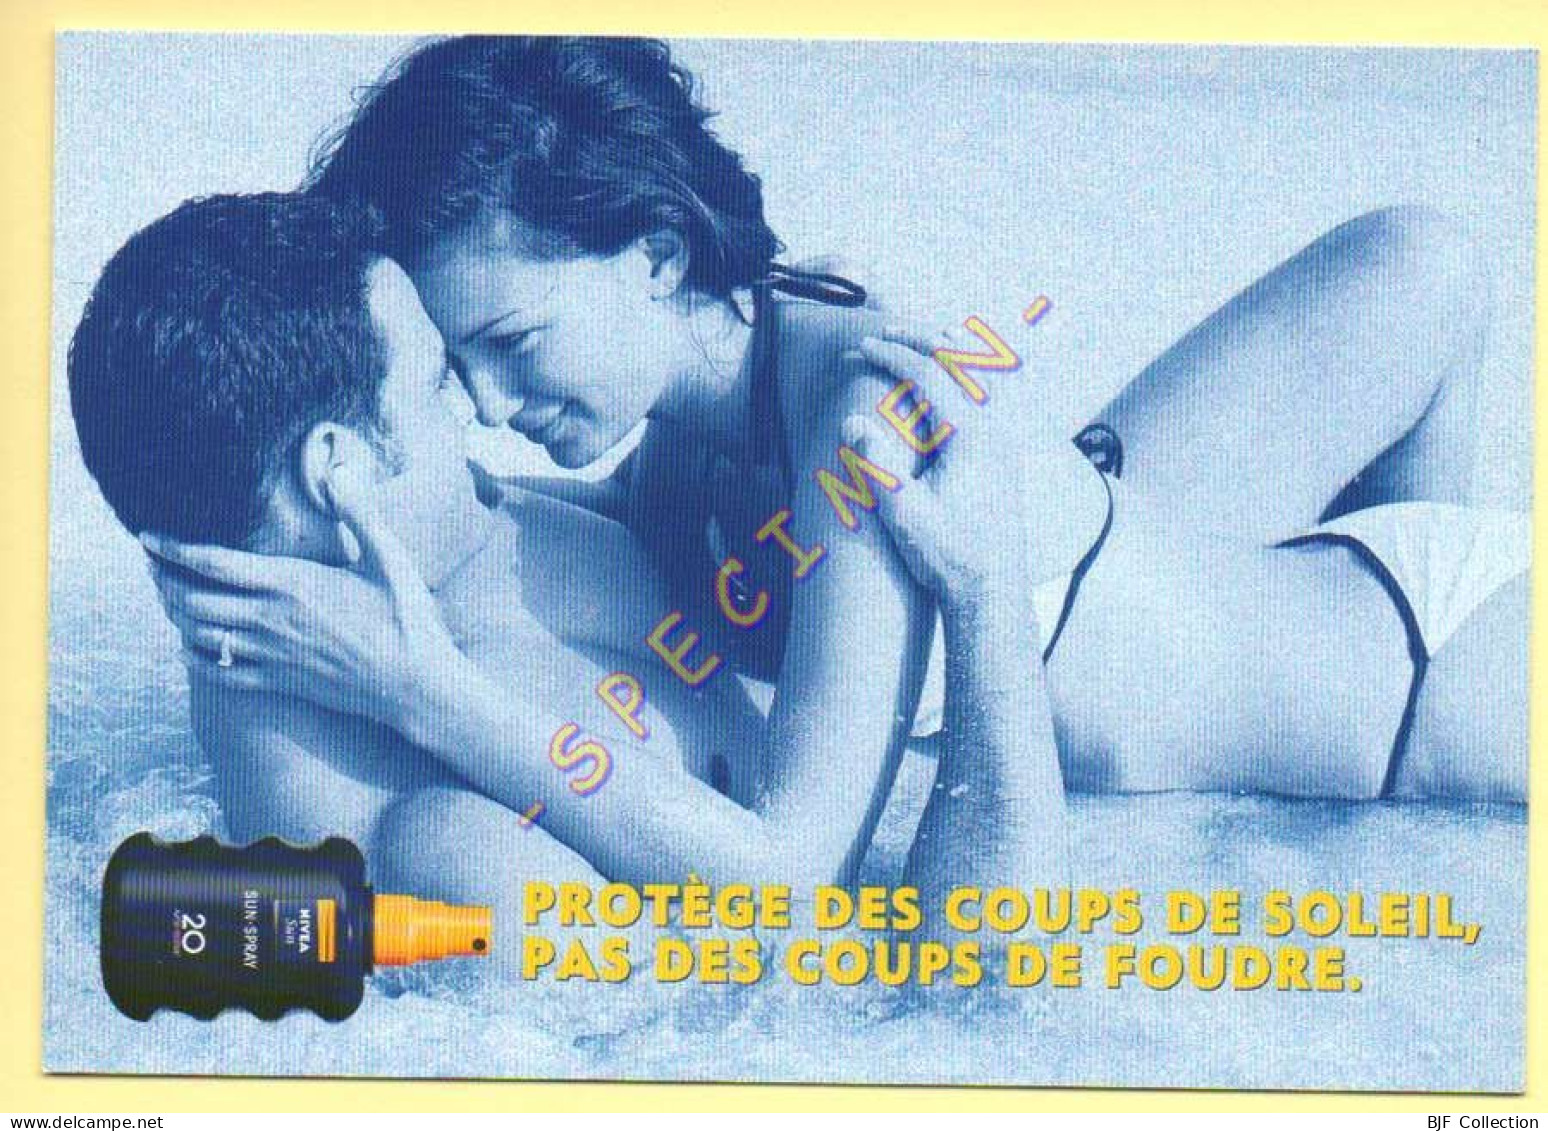 NIVEA SUN – Protège Des Coups De Soleil, Pas Des Coups De Foudre - Advertising